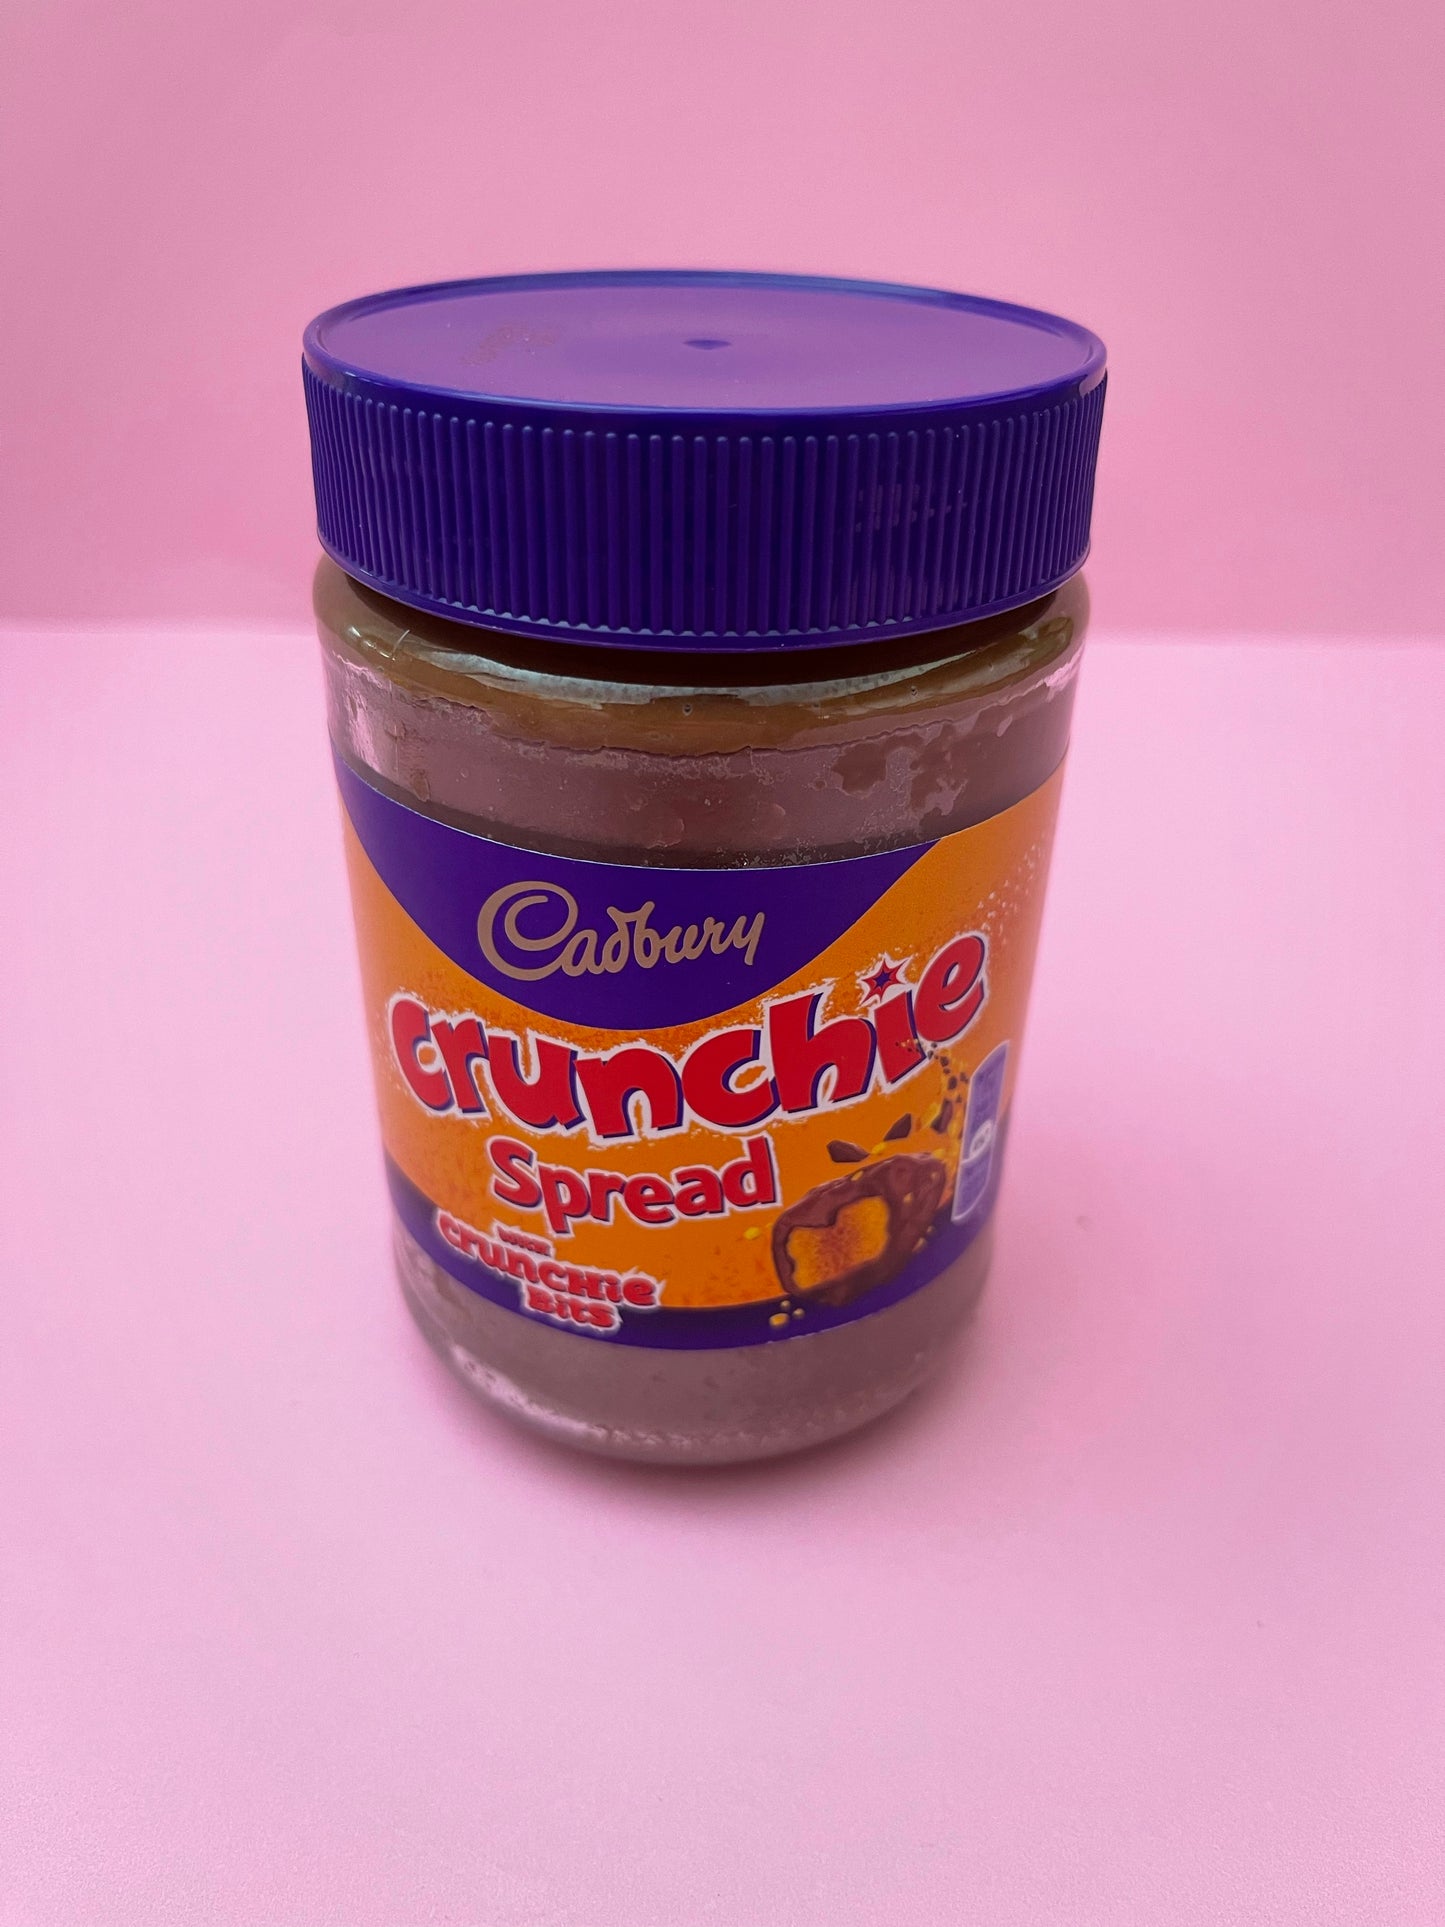 Cadbury Crunchie  spread - best seller